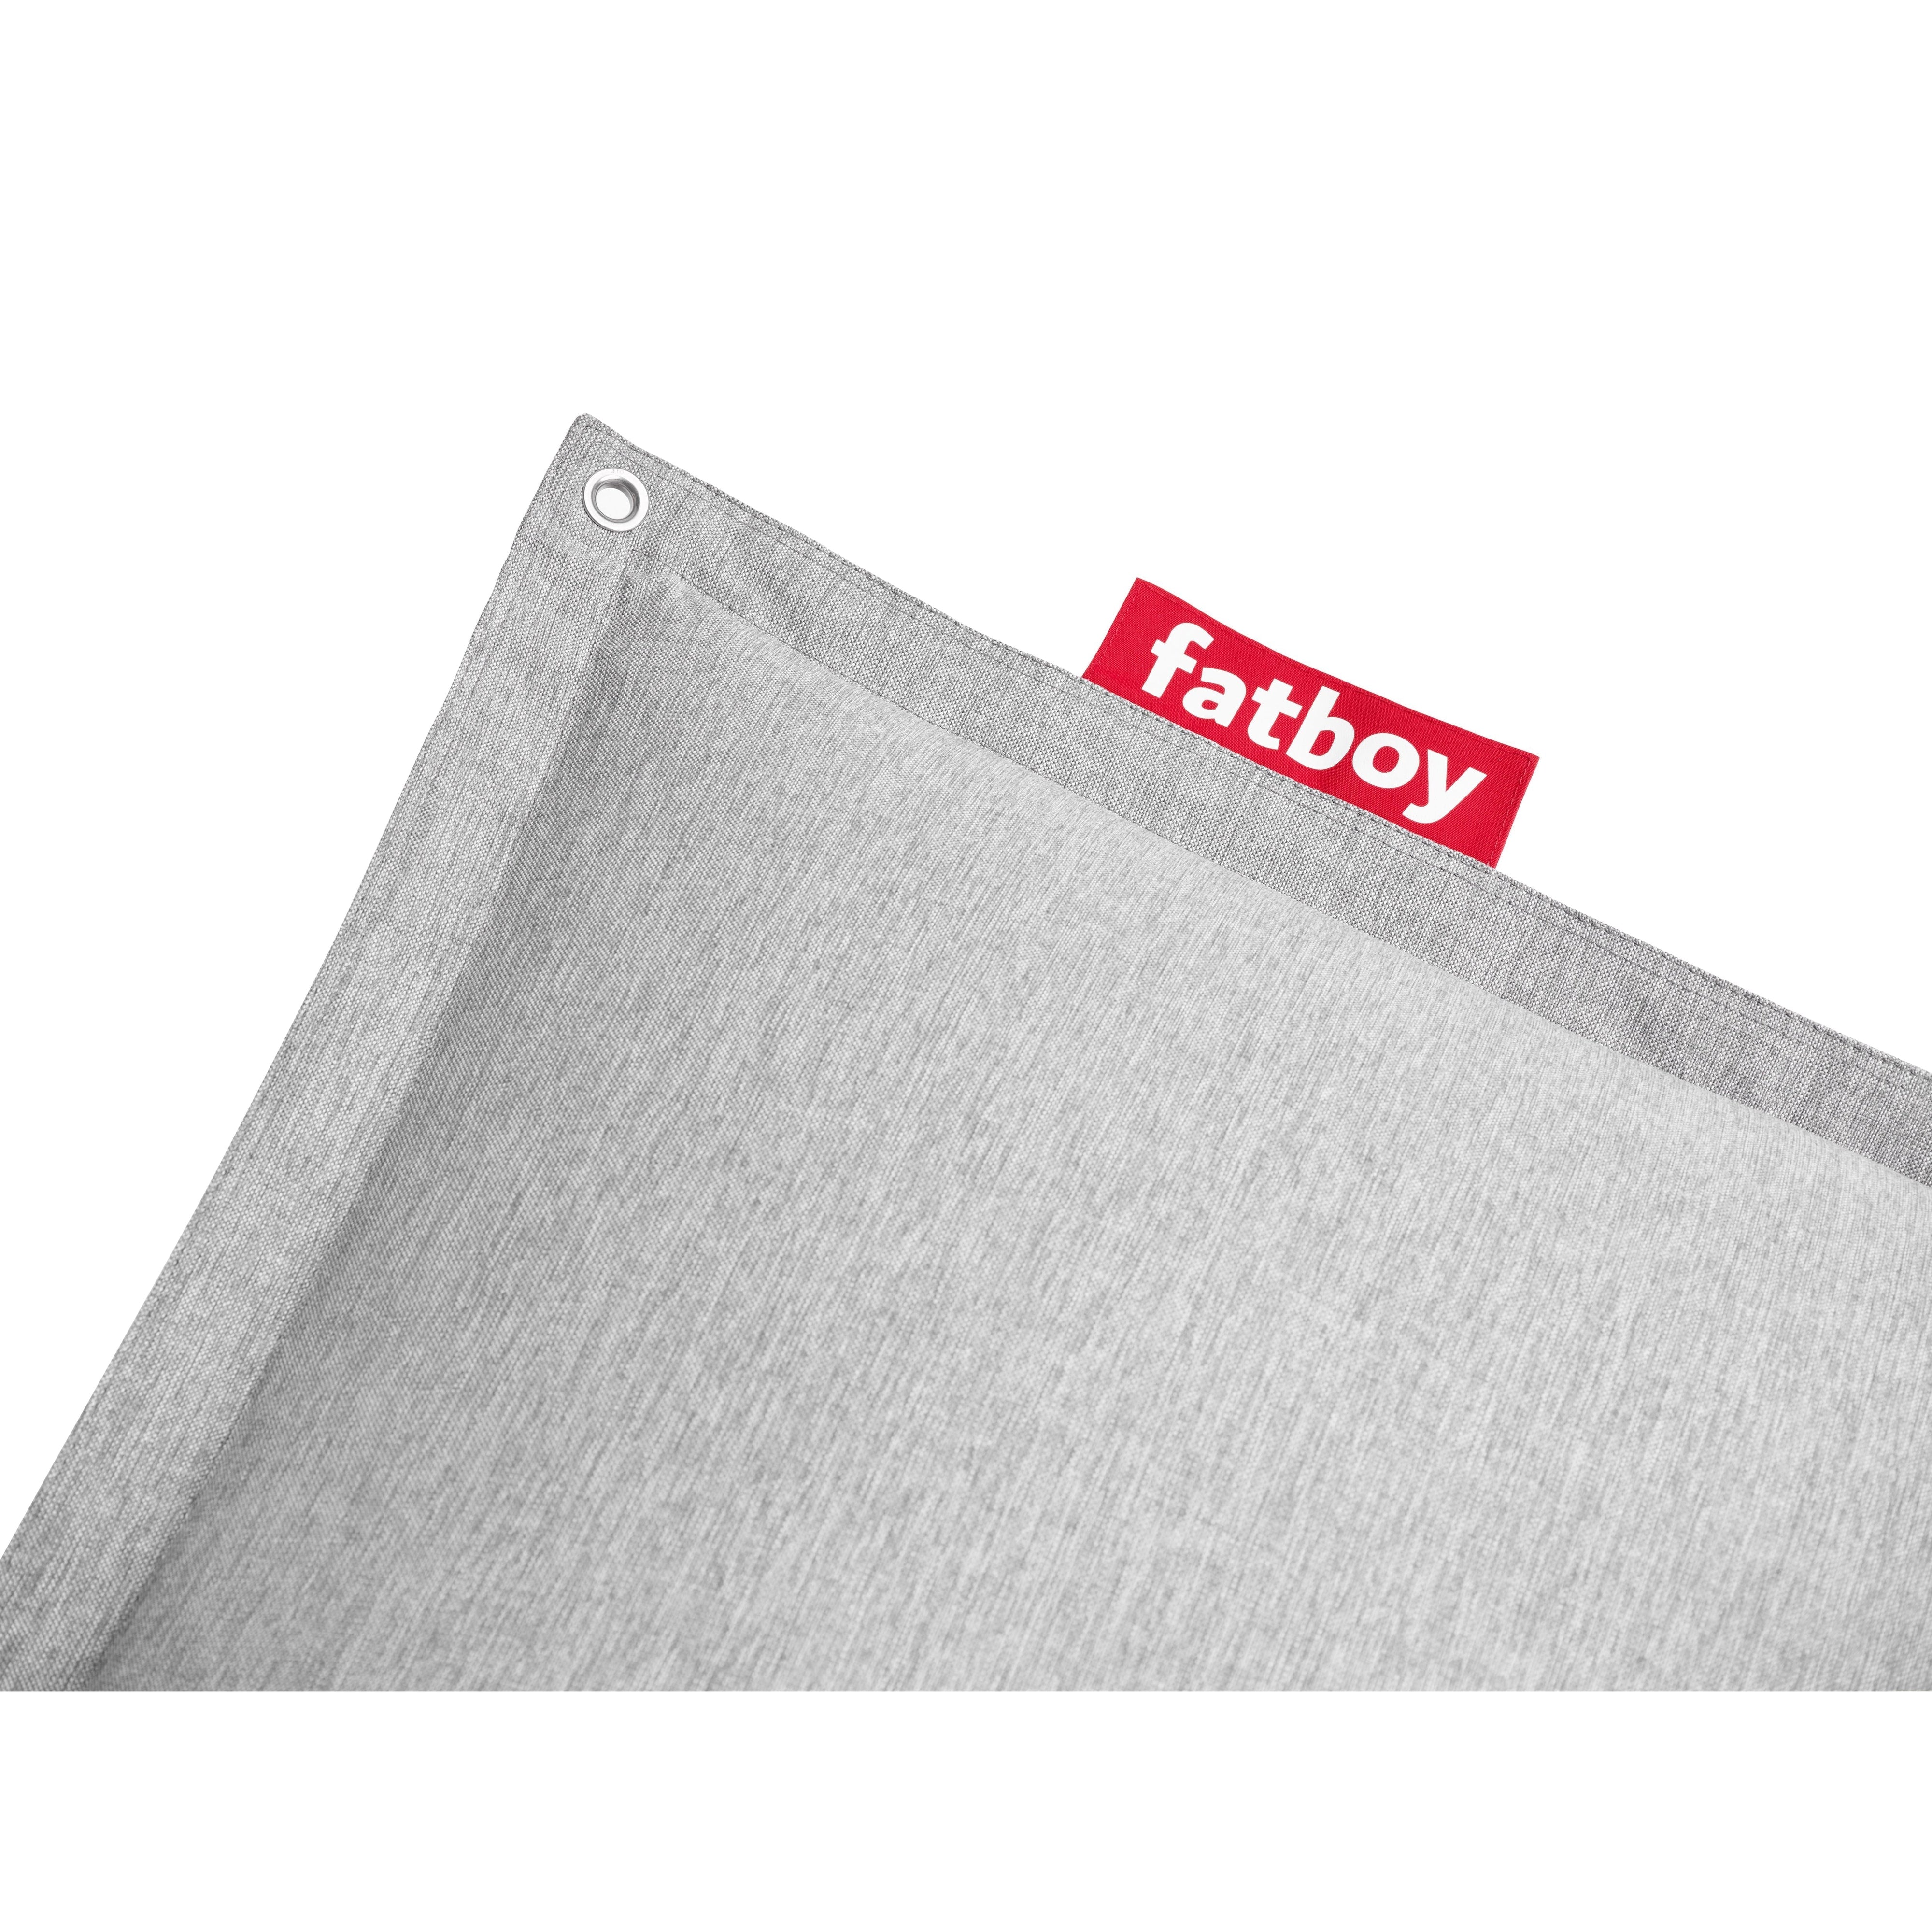 Fatboy Original Floatzac Beanbag, Stone Grey